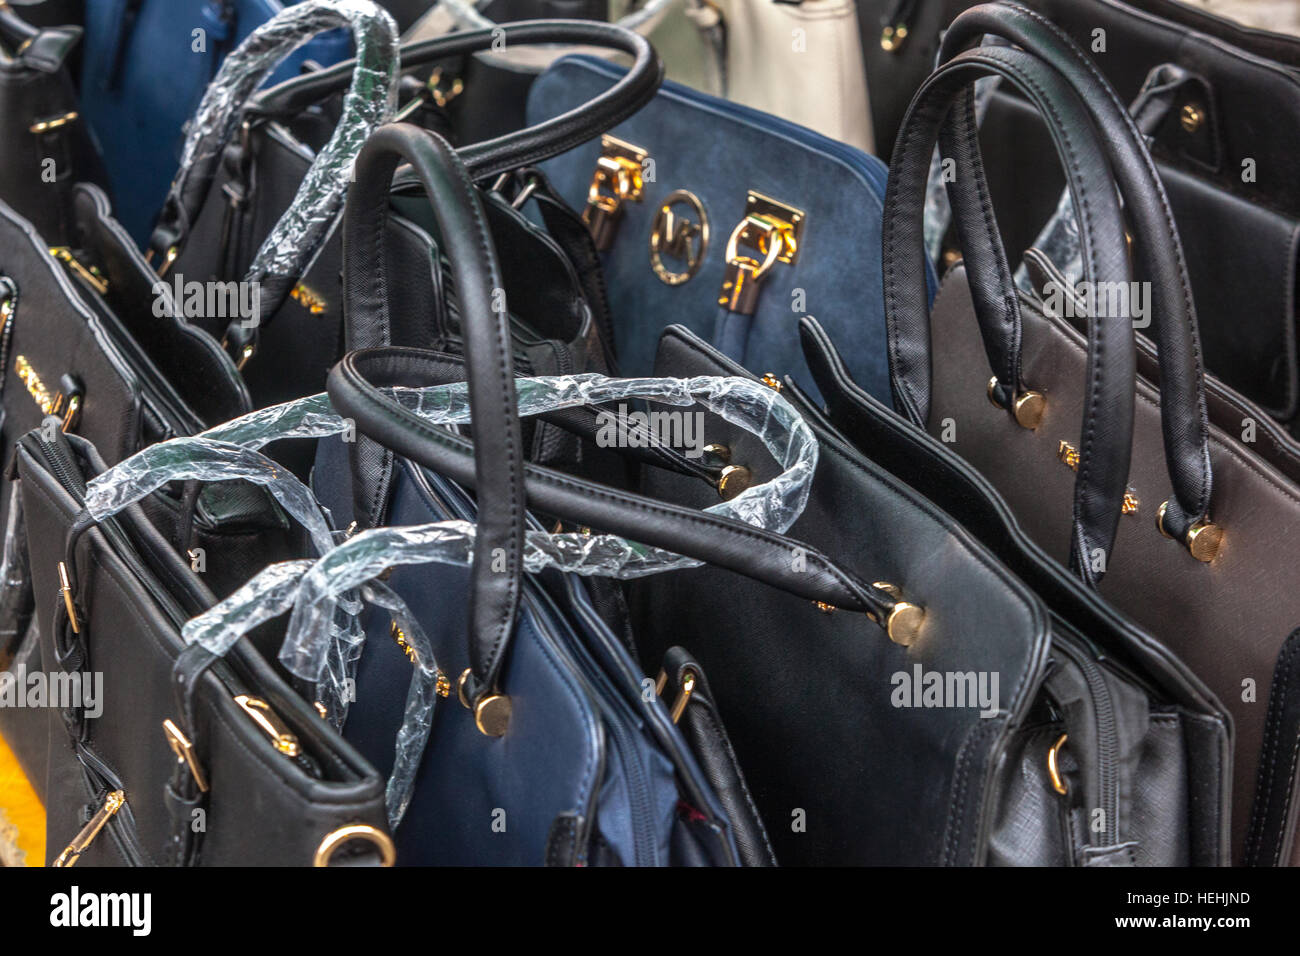 La vente de faux sacs à mains marque de renom Michael Kors, marché, Holesovice, Prague, République Tchèque Banque D'Images